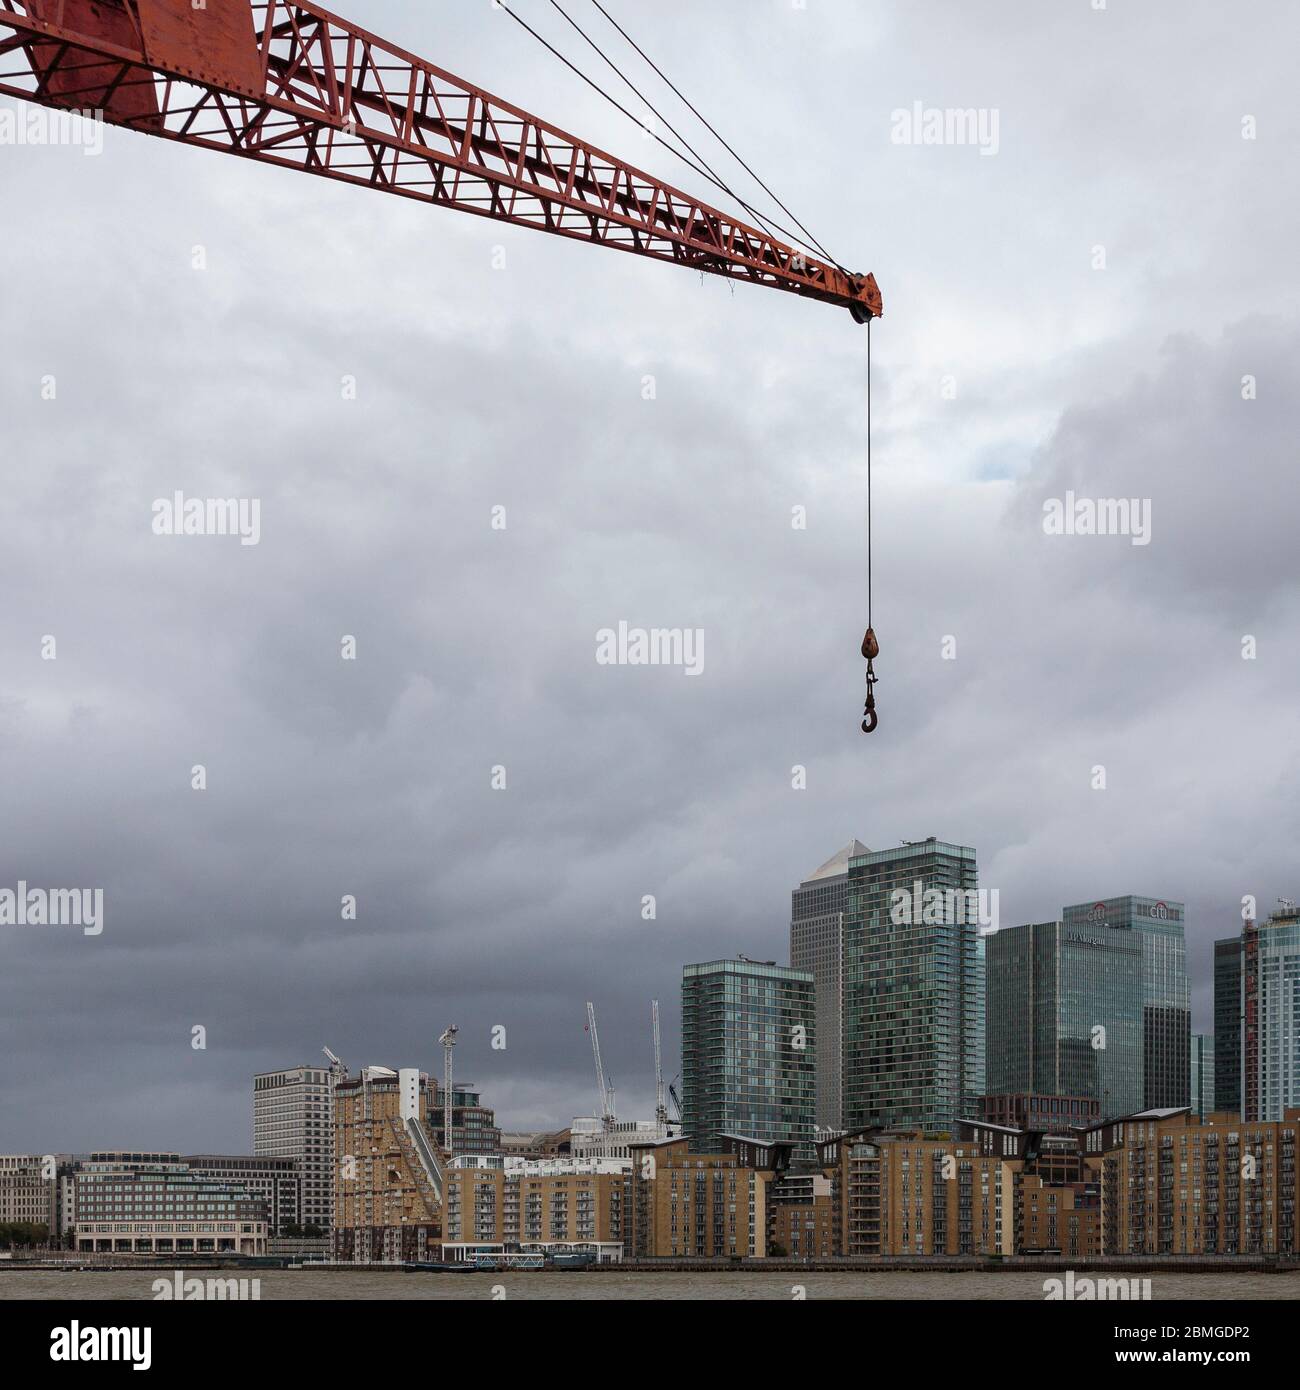 Die erzwungene Perspektive lässt einen Kran gigantisch über Canary Wharf erscheinen, von der anderen Seite der themse, London, England Stockfoto